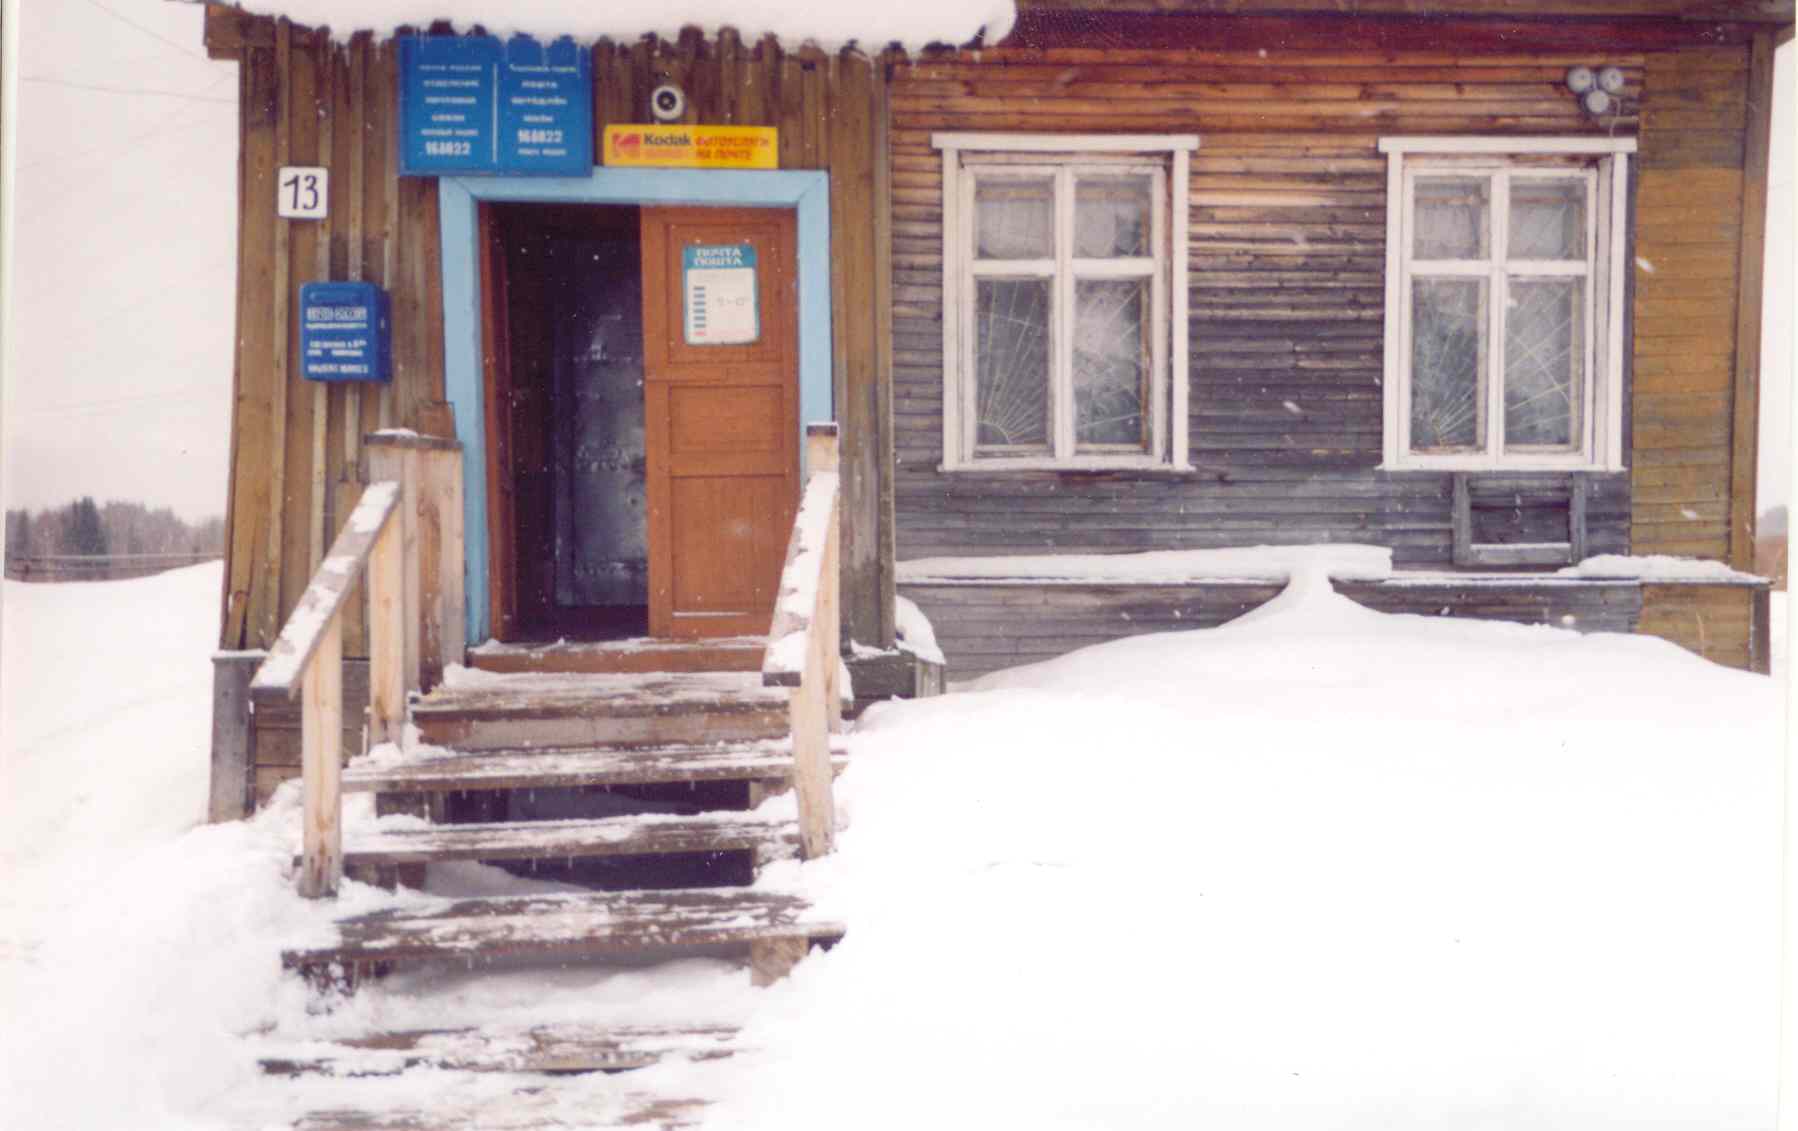 ФАСАД, отделение почтовой связи 168022, Коми респ., Корткеросский р-он, Визябож